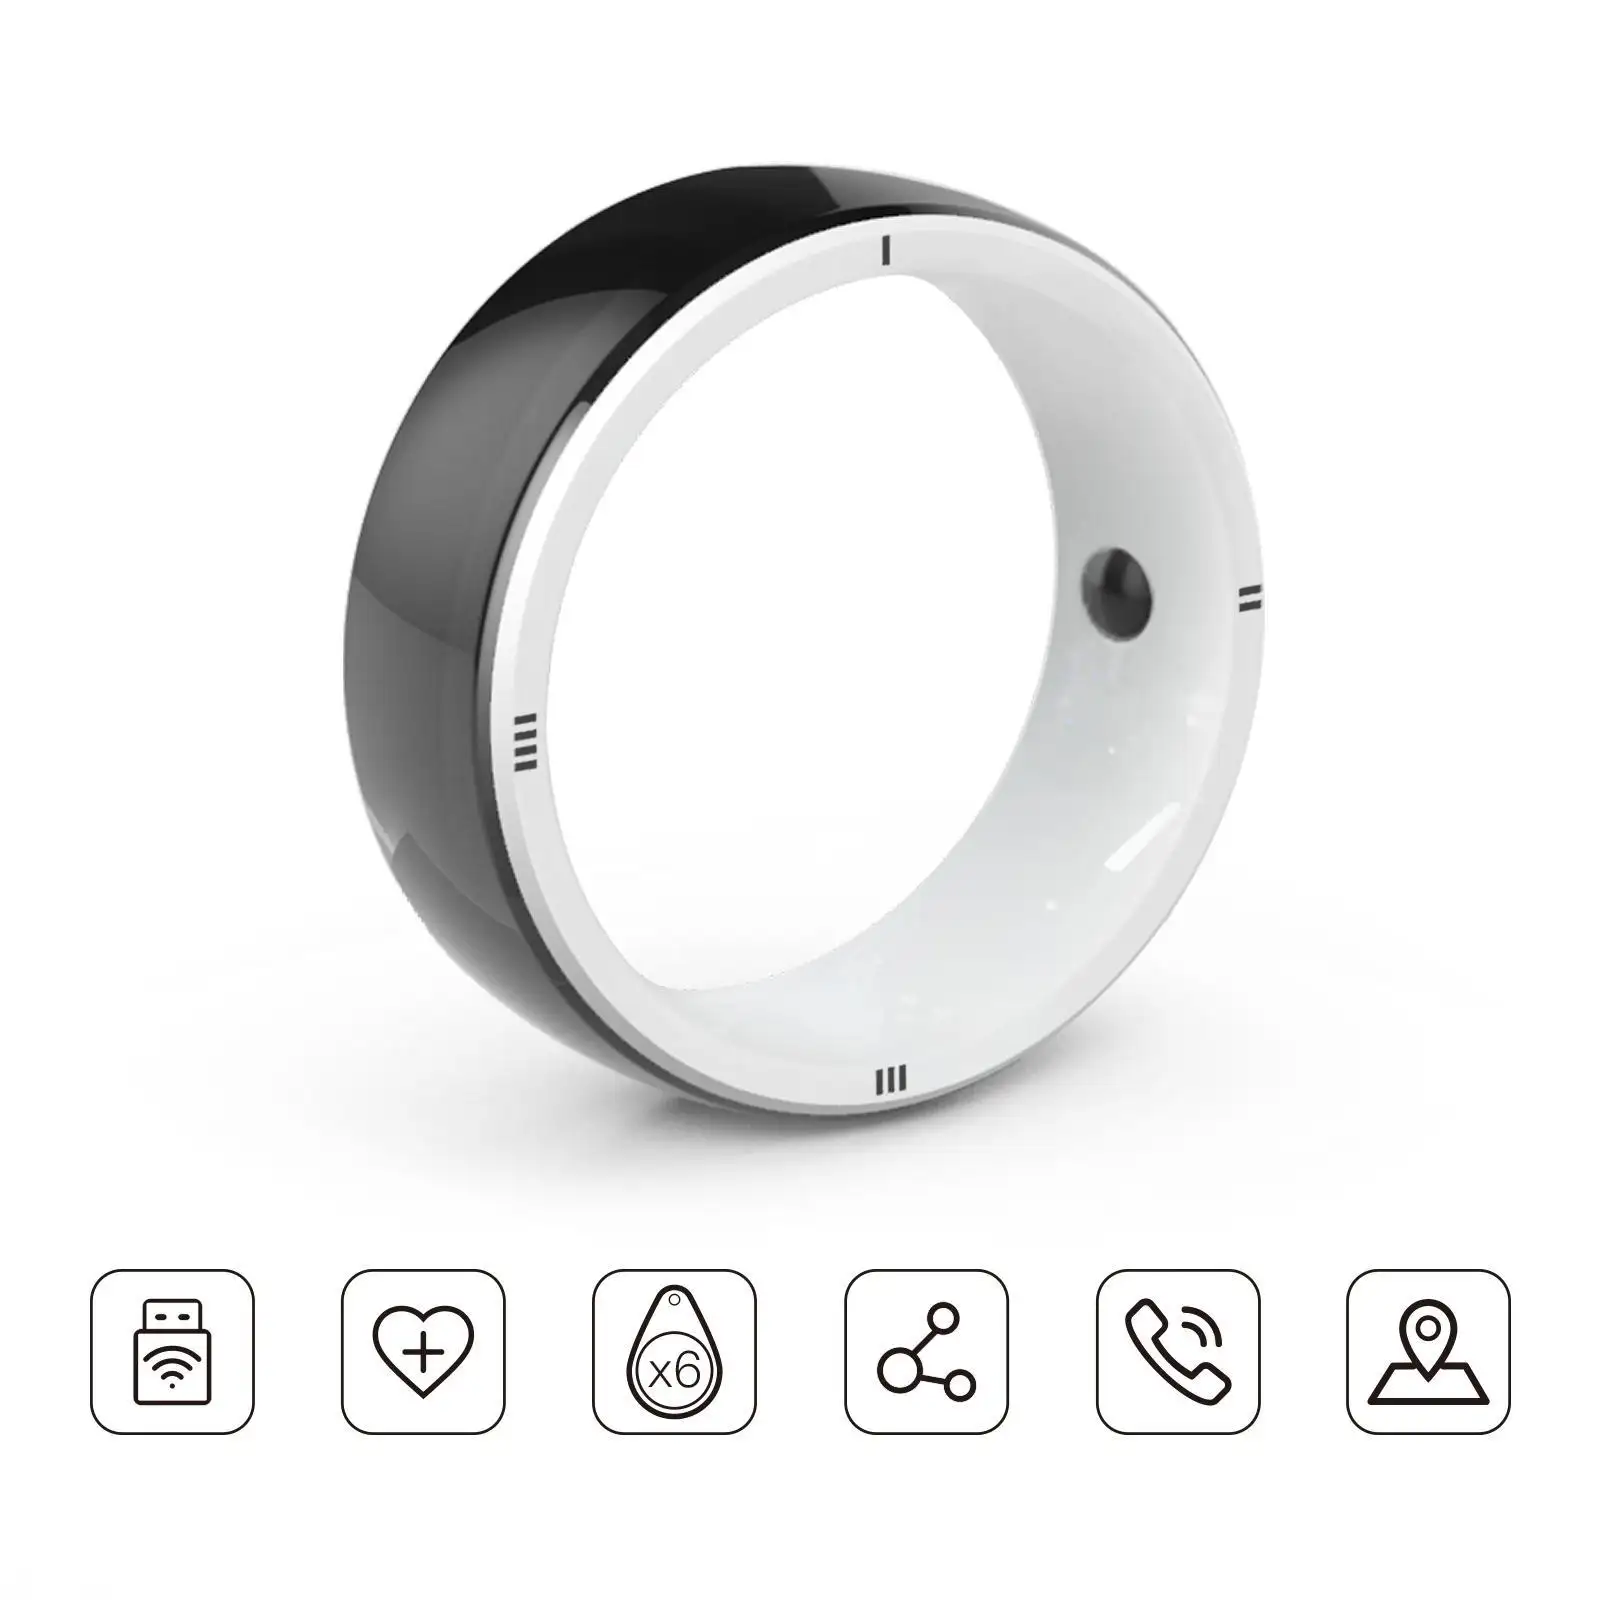 JAKCOM R5 Smart Ring Nuevo producto Smart Ring como Android Mid Tablet Juegos Descargar partes de la célula ventilador de soporte móvil flexible en línea